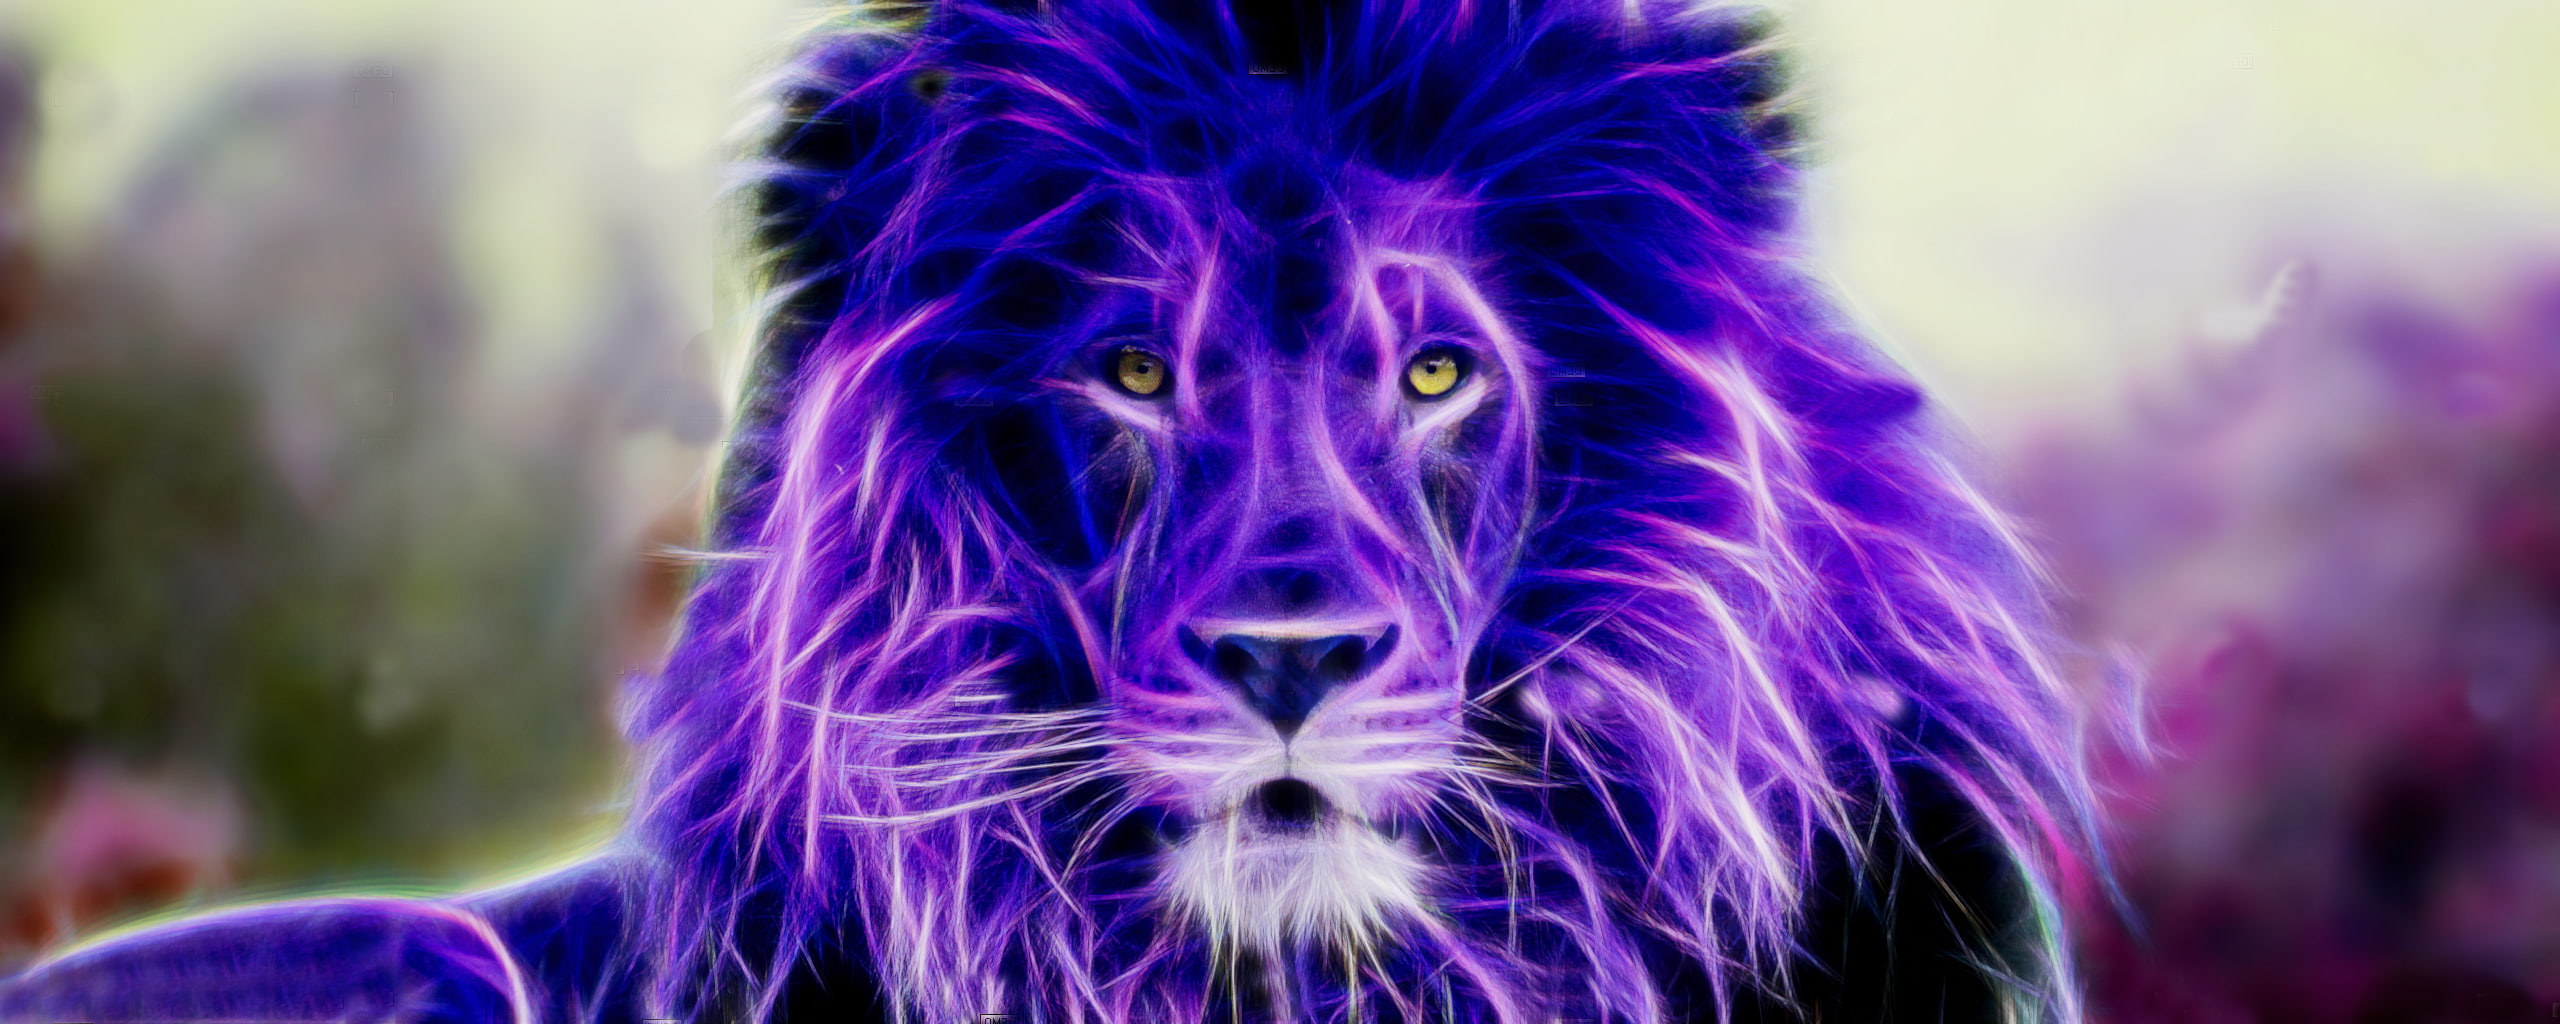 Colorful, fractalius, lion